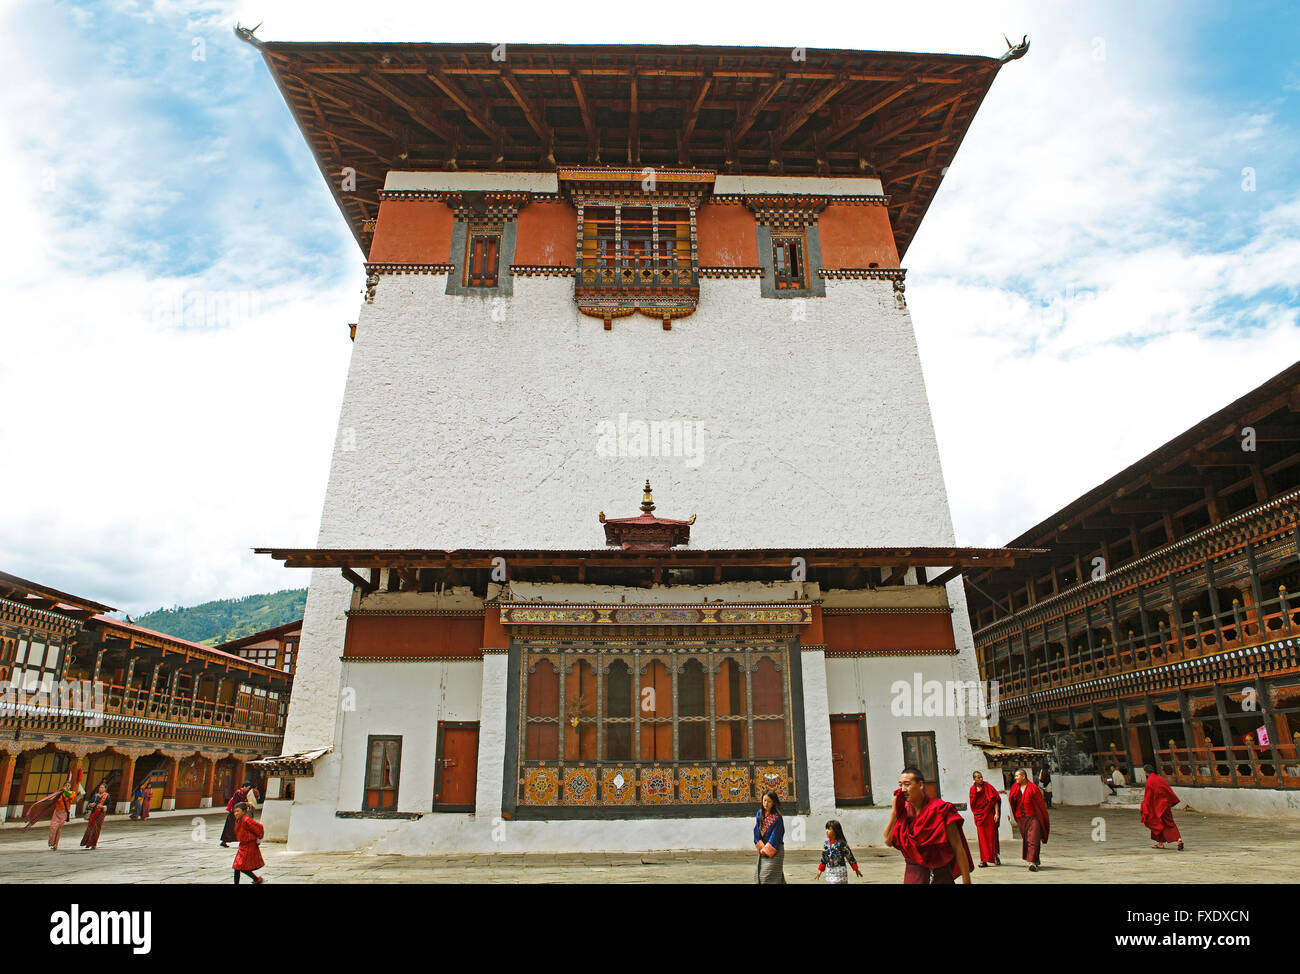 Paro Dzong, courtyard of Paro monastery, Bhutan Stock Photo